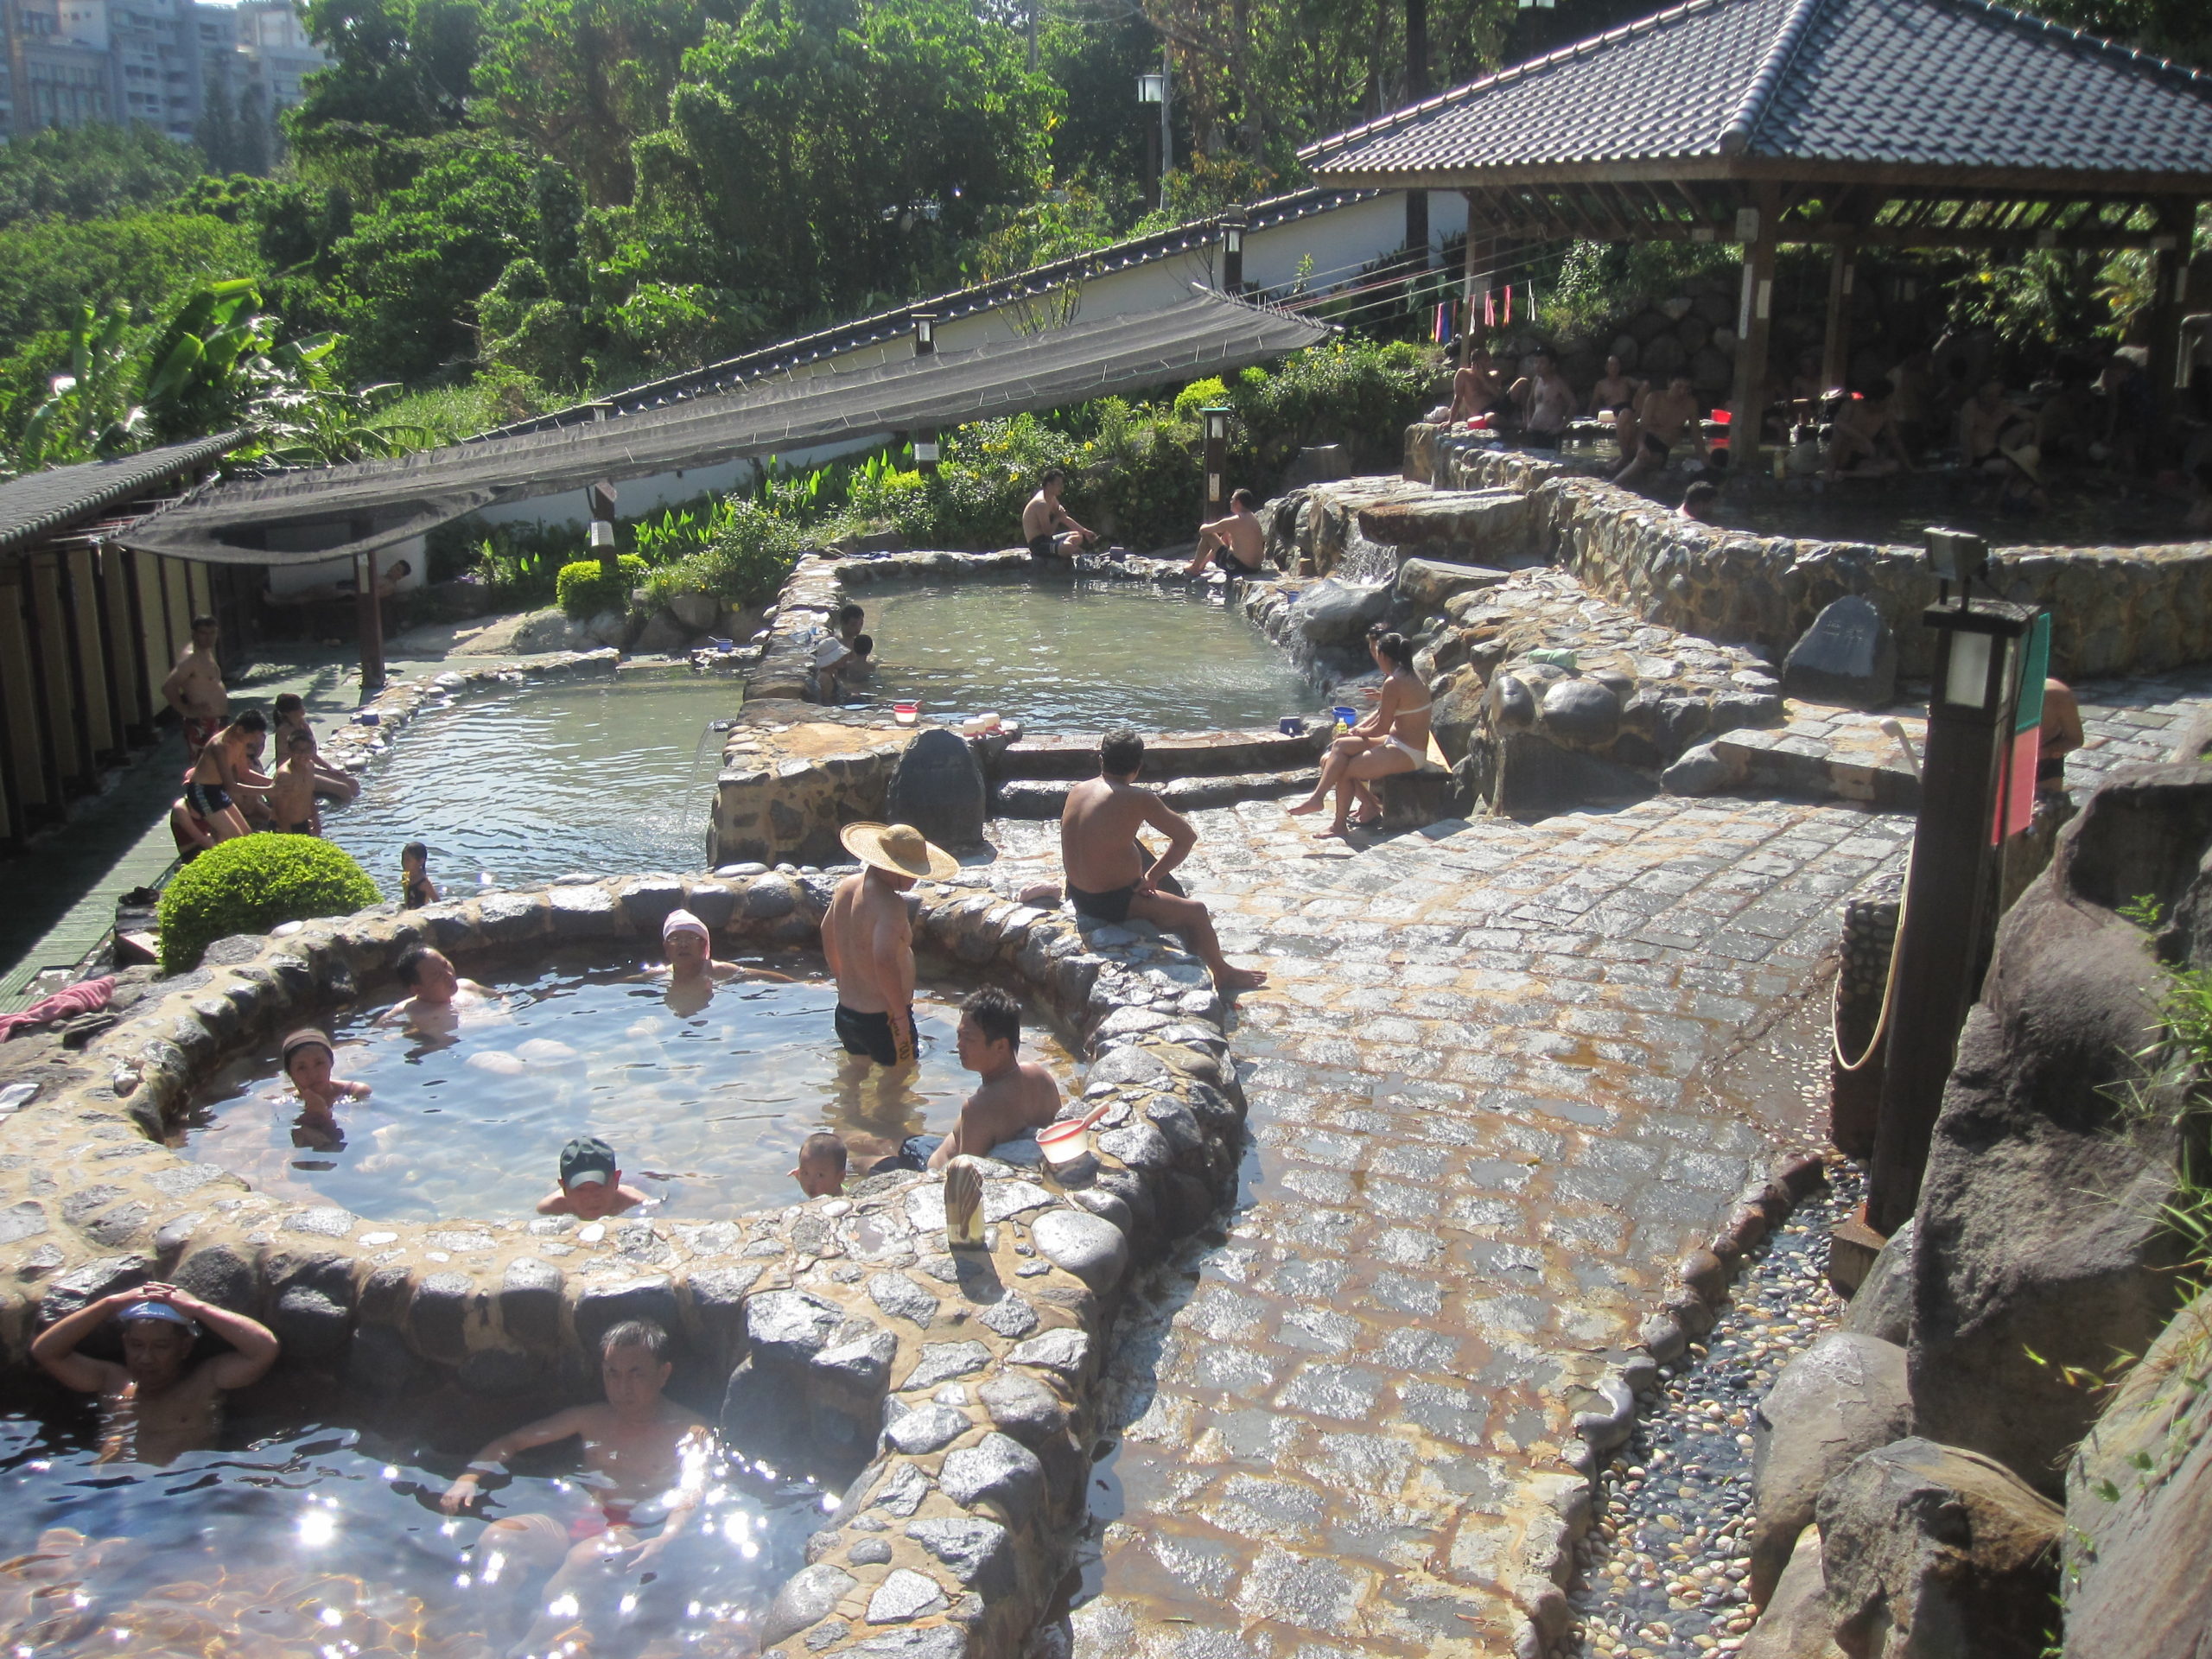 Beitou Hot Springs